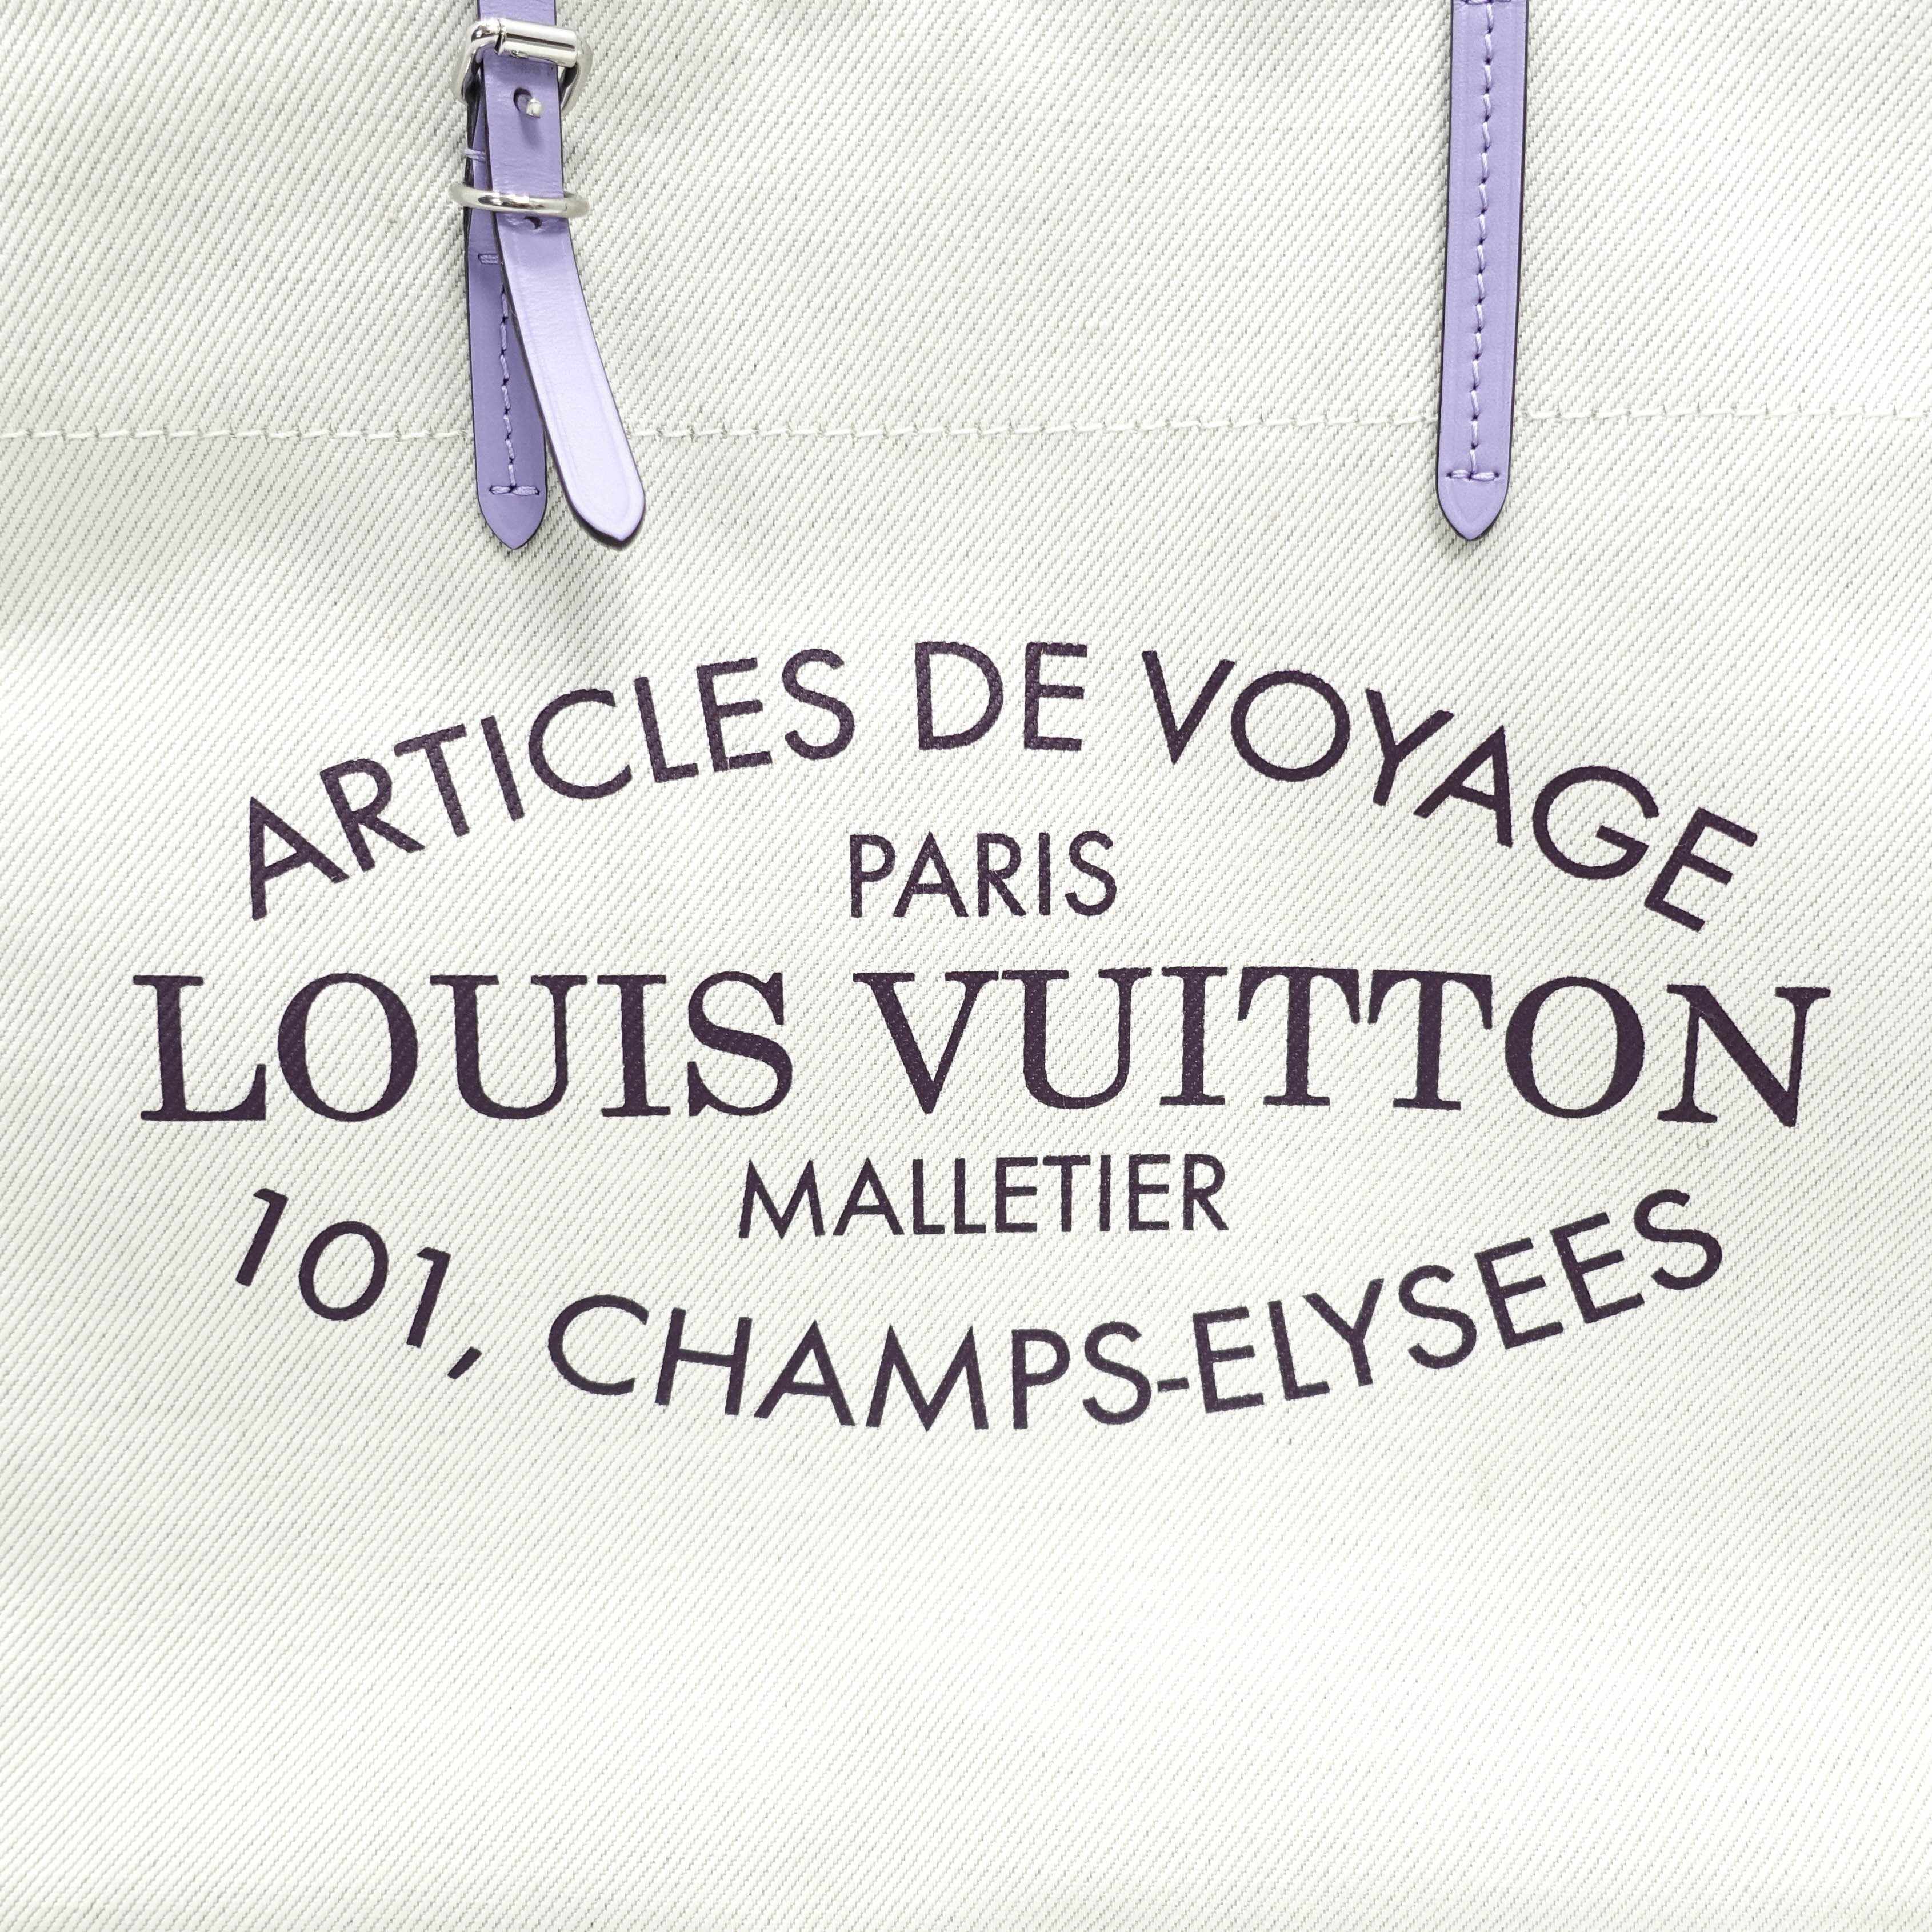 Louis Vuitton Articles De Voyage Paris Malletier 101 -  Israel